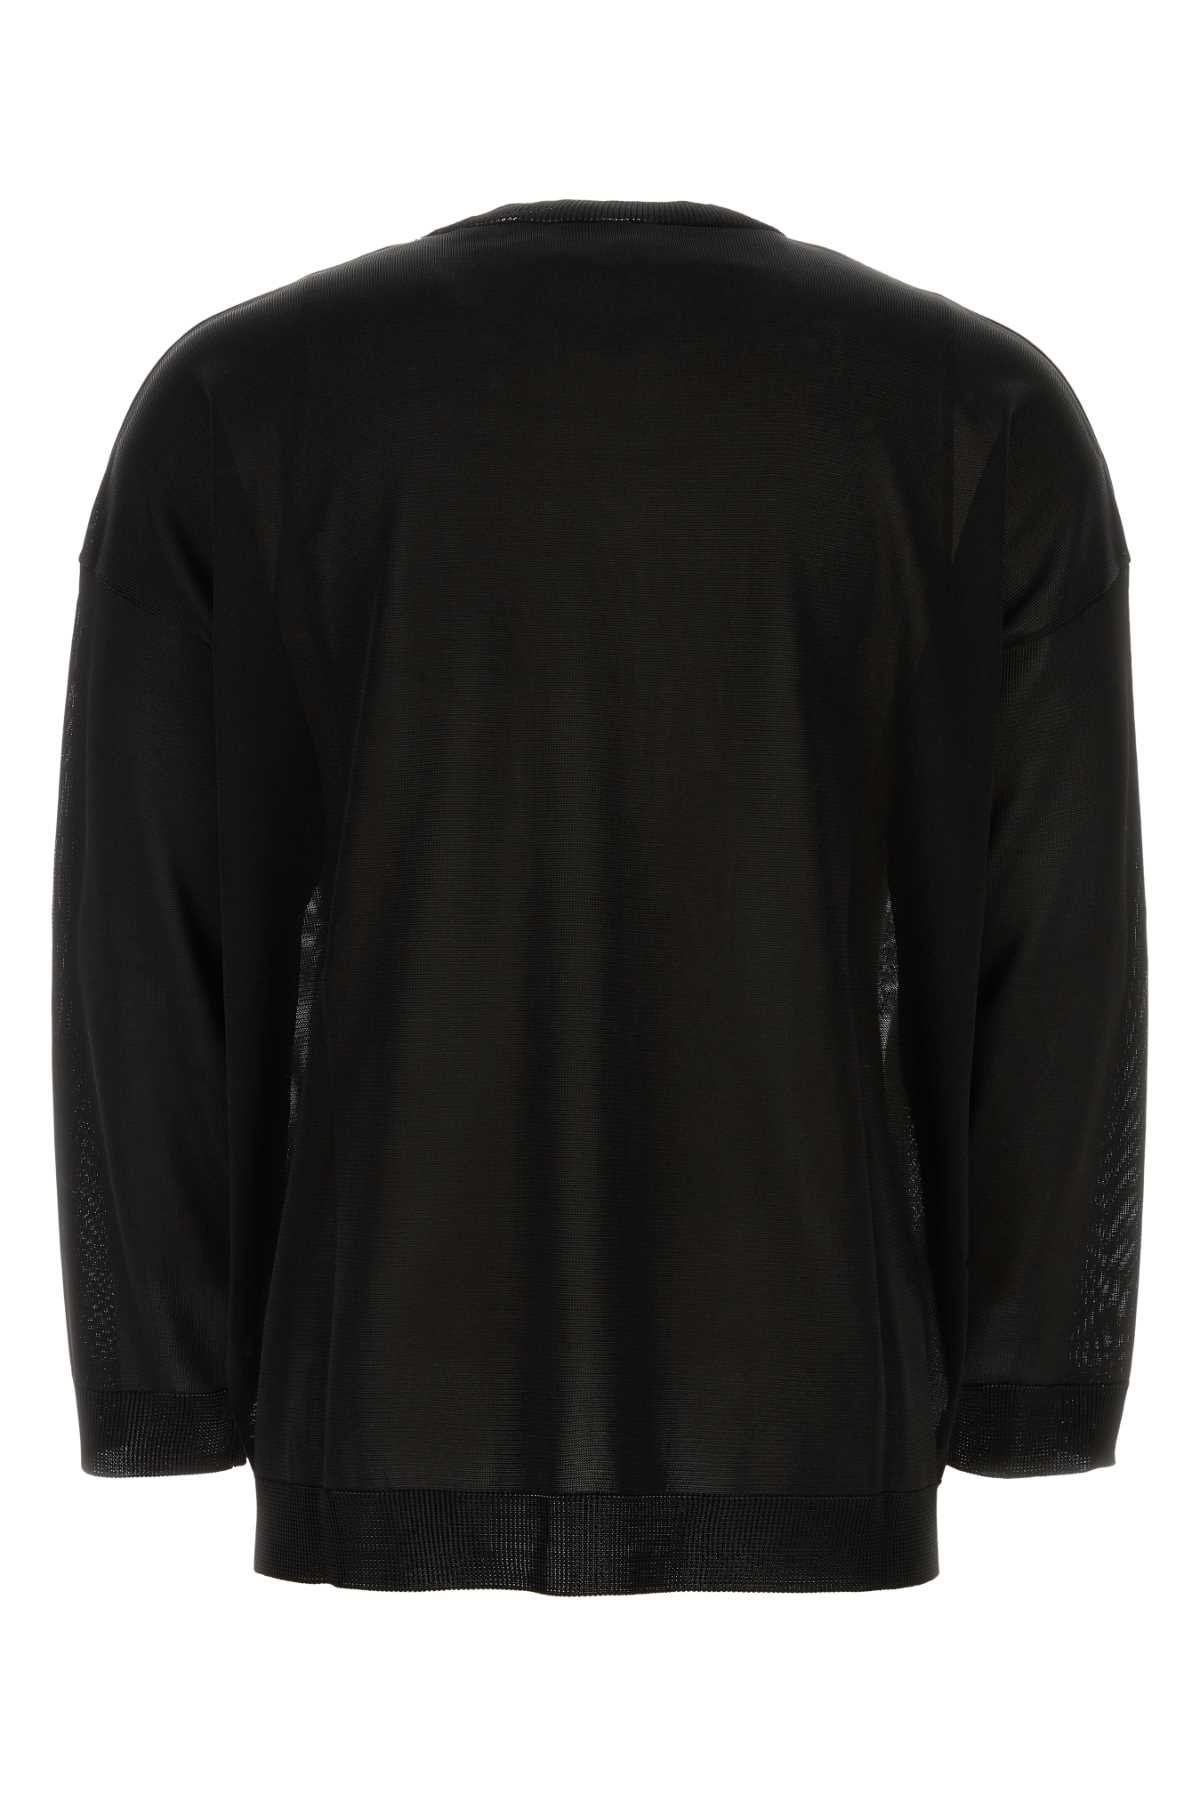 Valentino Black Viscose Sweater In Neroavoriogrigio